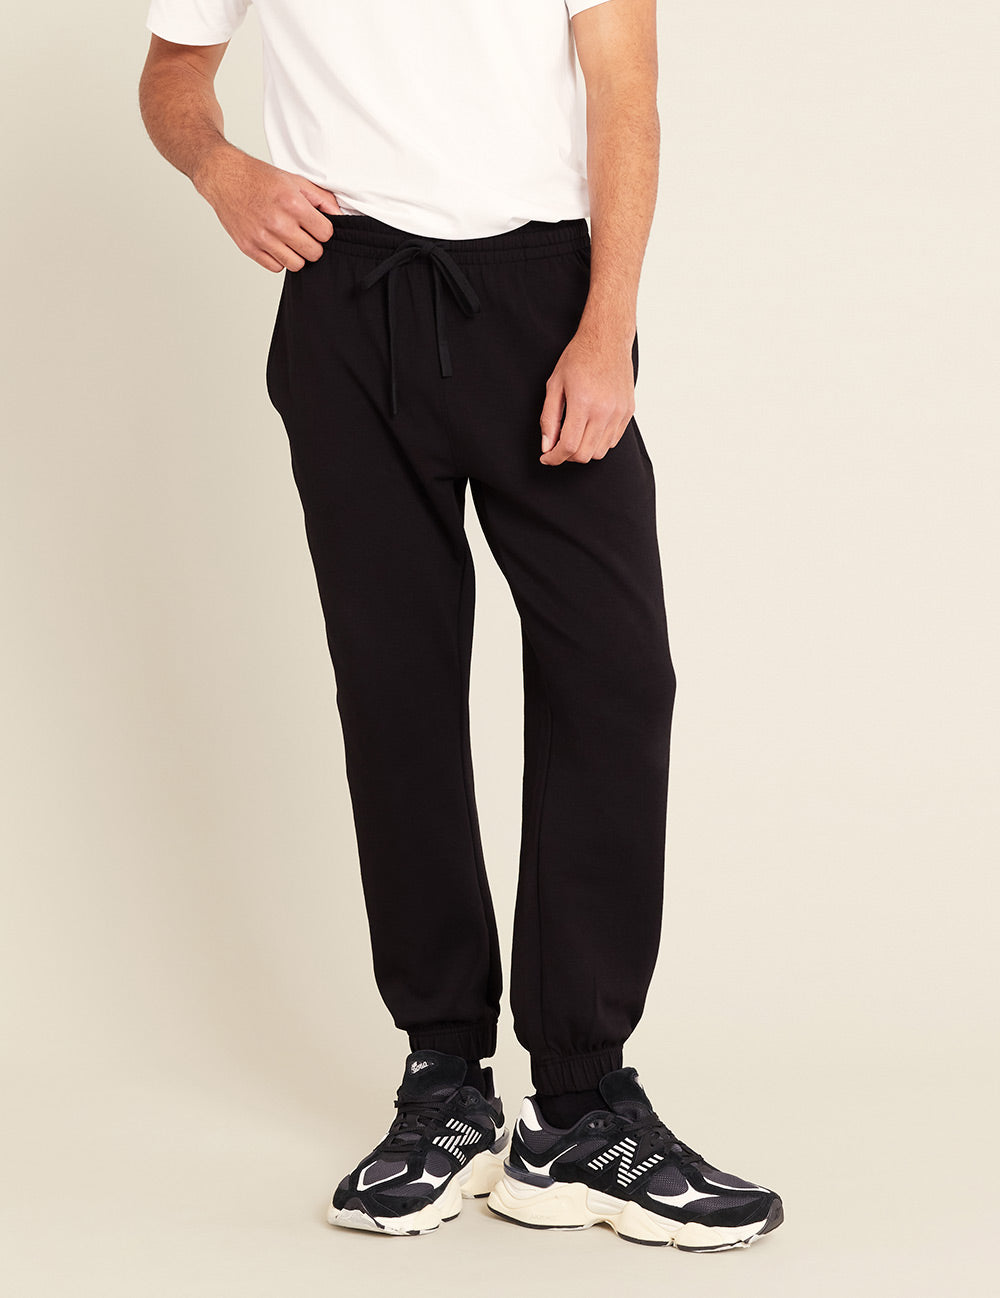 Gender-Neutral-Cuffed-Sweat-Pants-Black-Male-Front.jpg